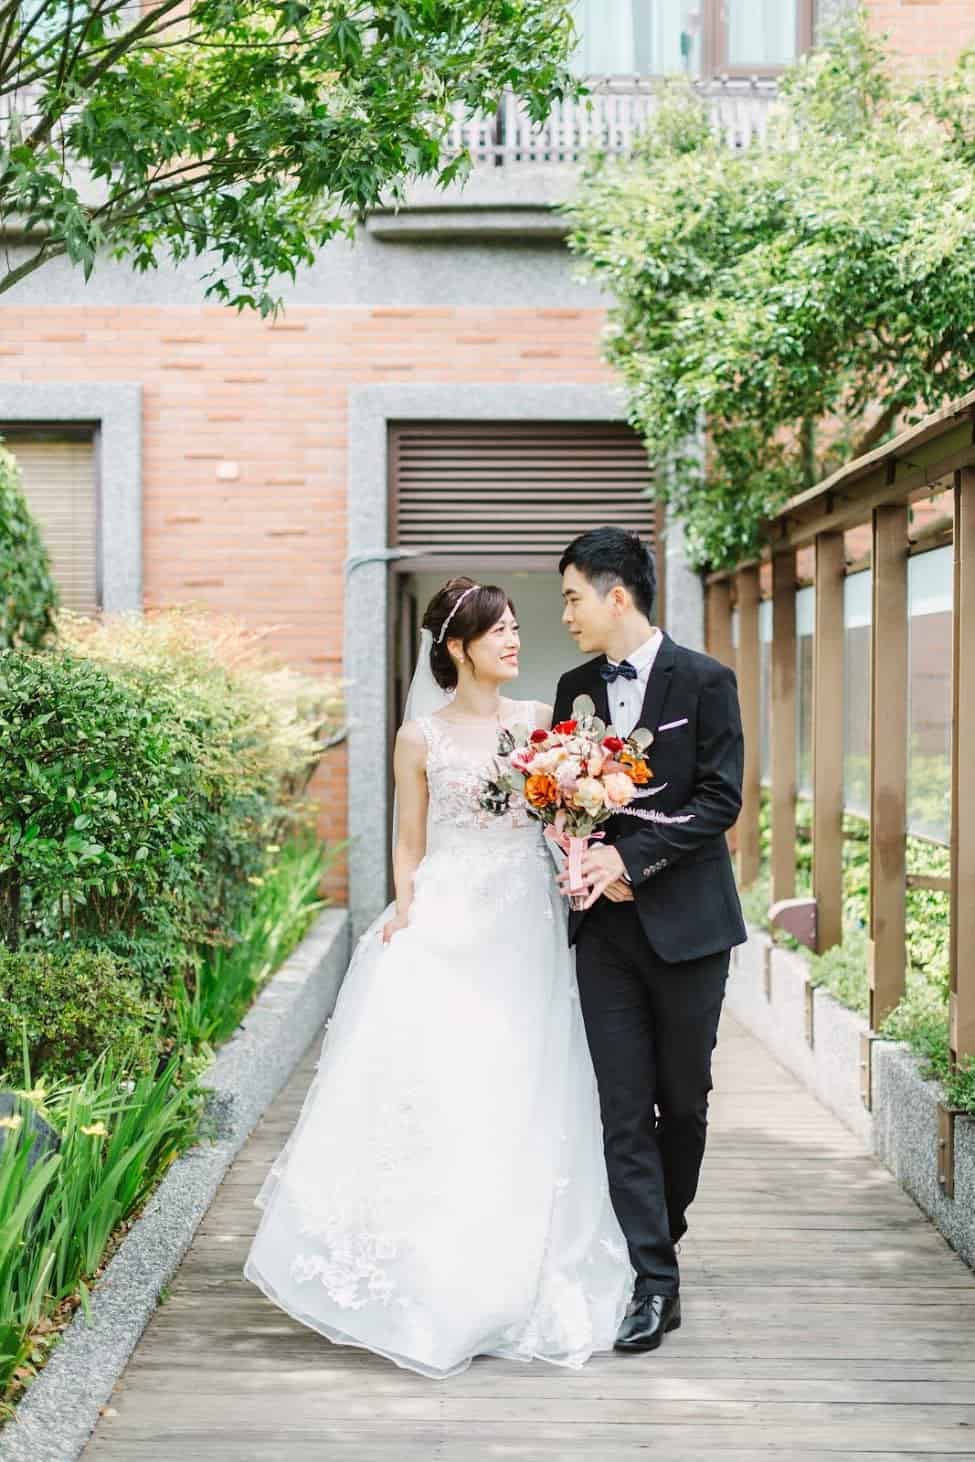 在 台北 的 維多麗亞酒店婚禮 場地舉行陽光正好的戶外證婚 , 是每位新娘夢寐以求的西式婚禮樣式!